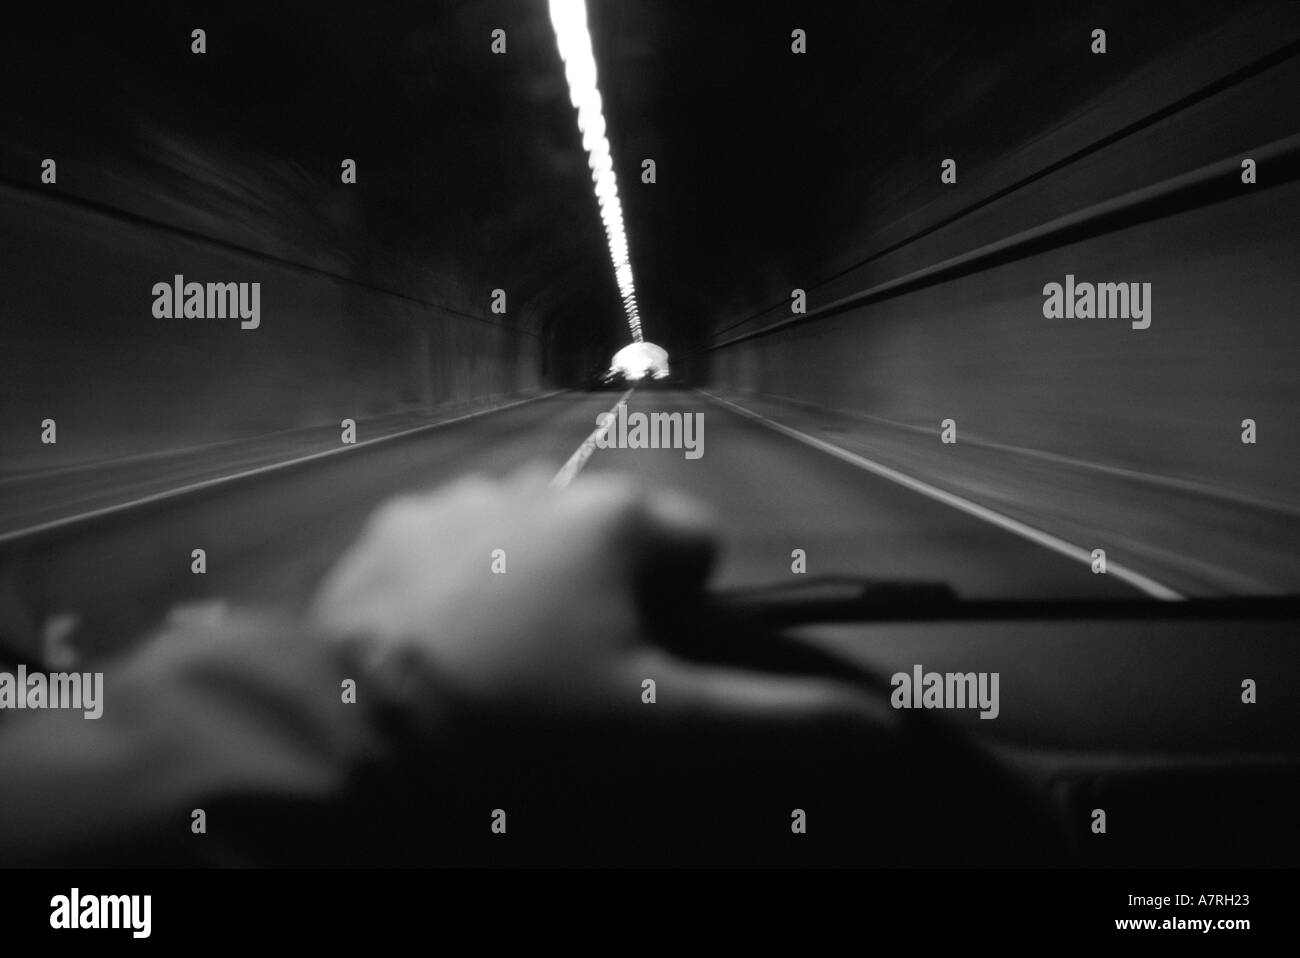 Vue à la première personne d'une personne conduisant une auto à travers un tunnel Banque D'Images